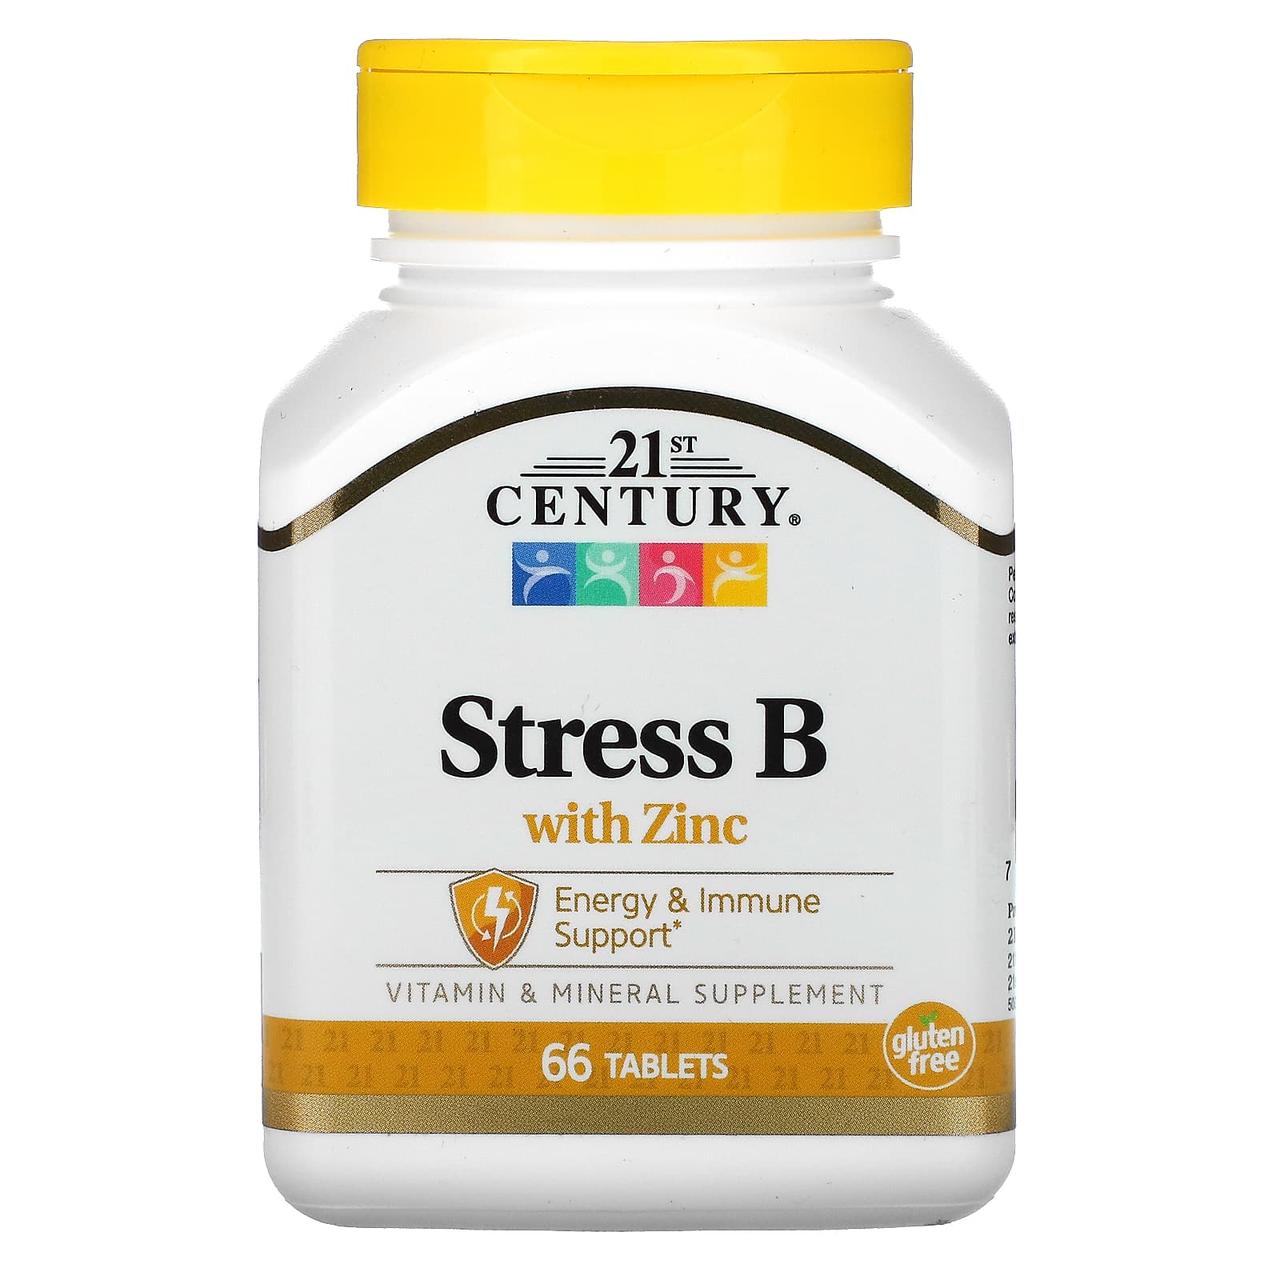 Стрес В з цинком, Stress B with Zinc, 21st Century, 66 таблеток